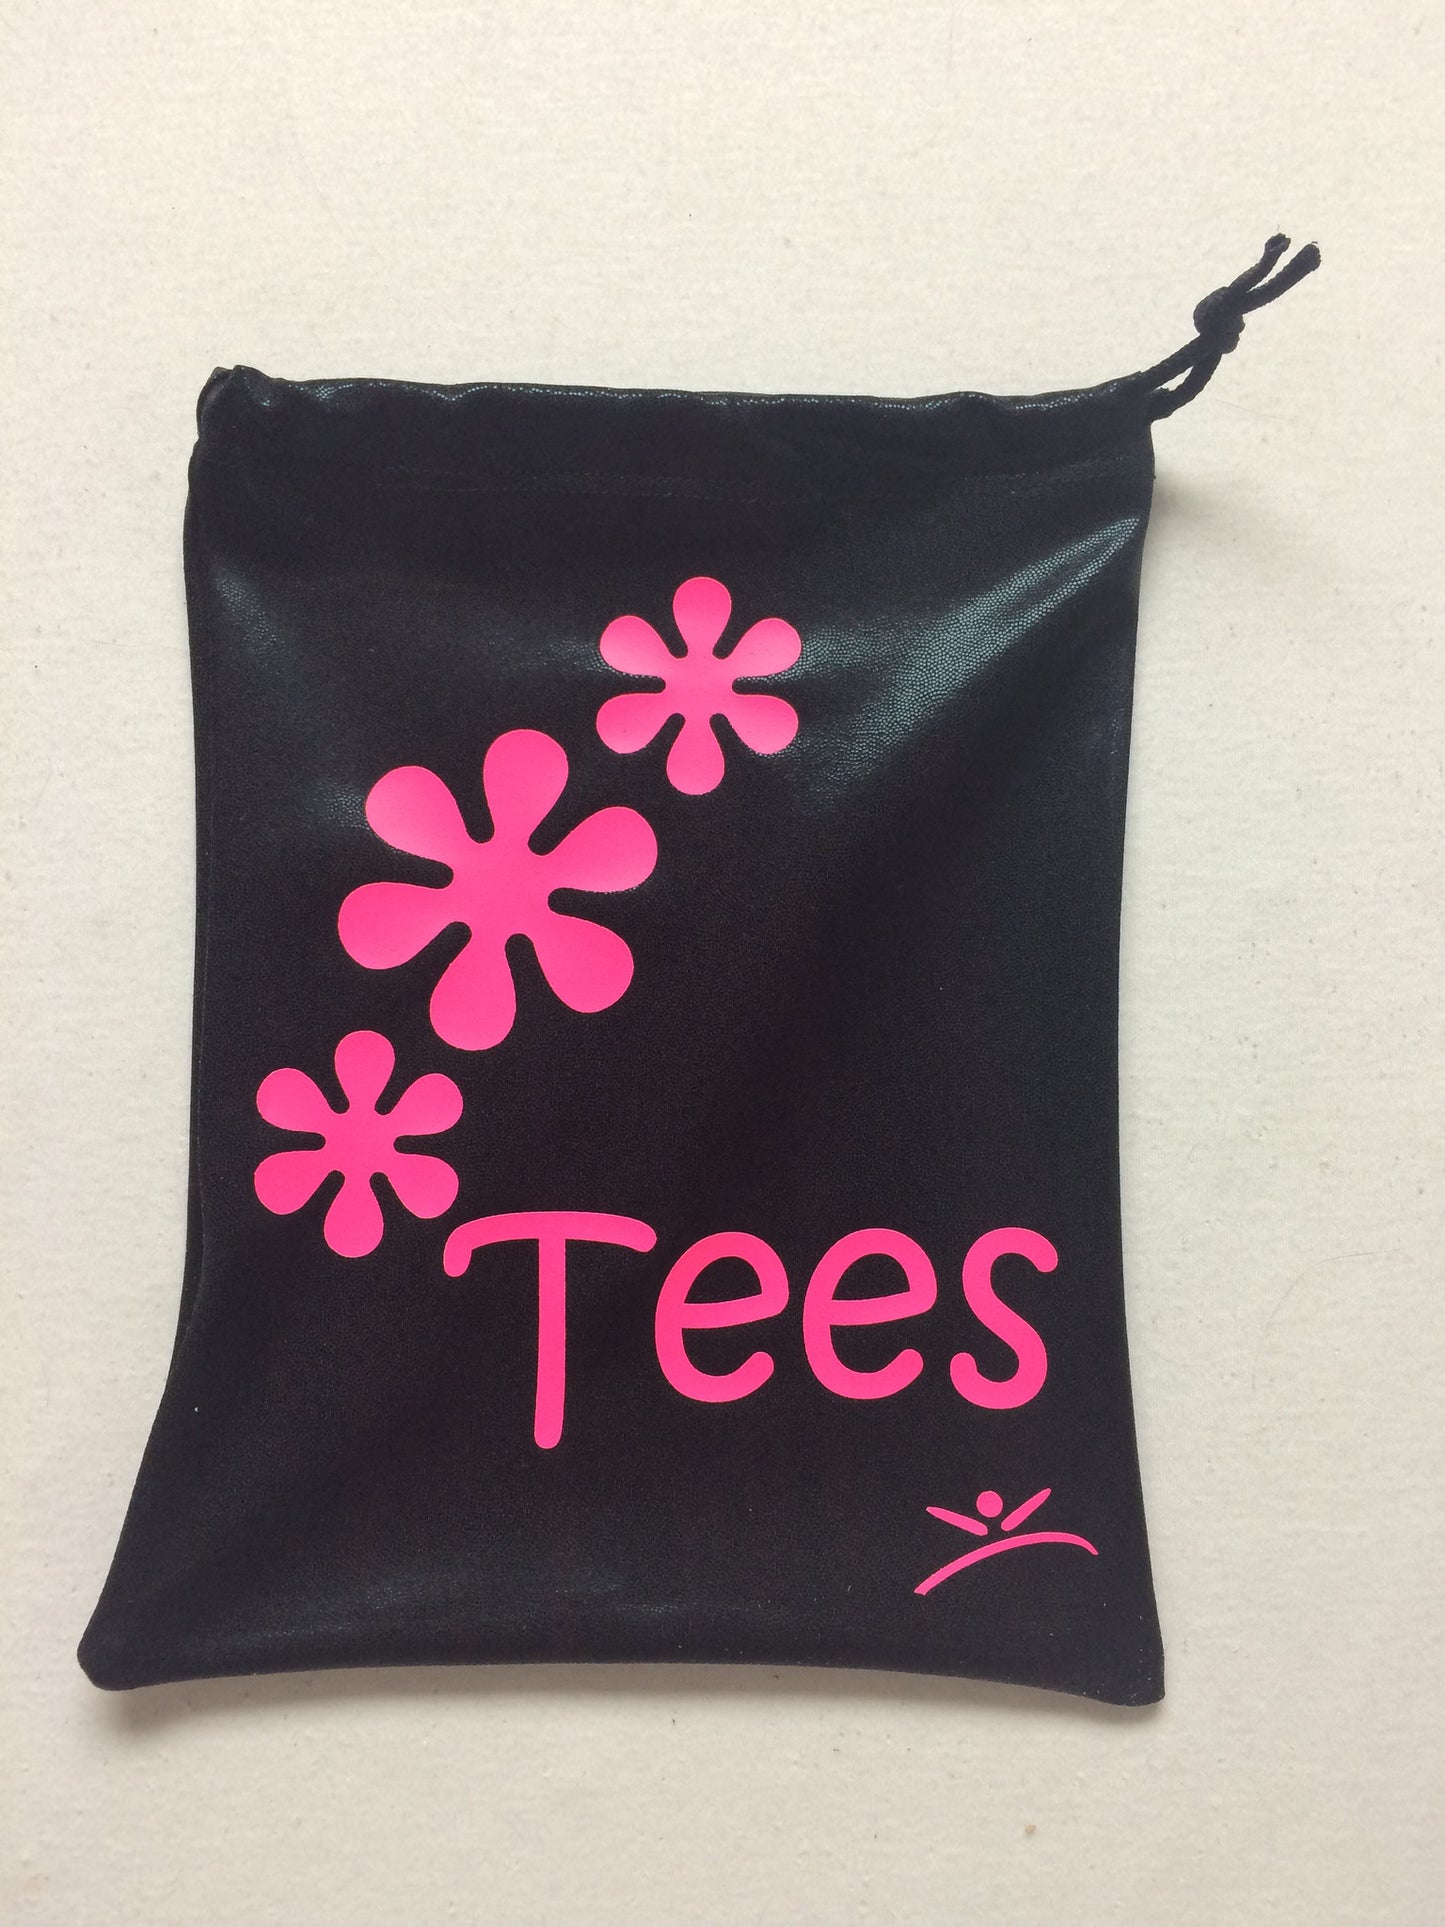 Golf flower power bag for tees